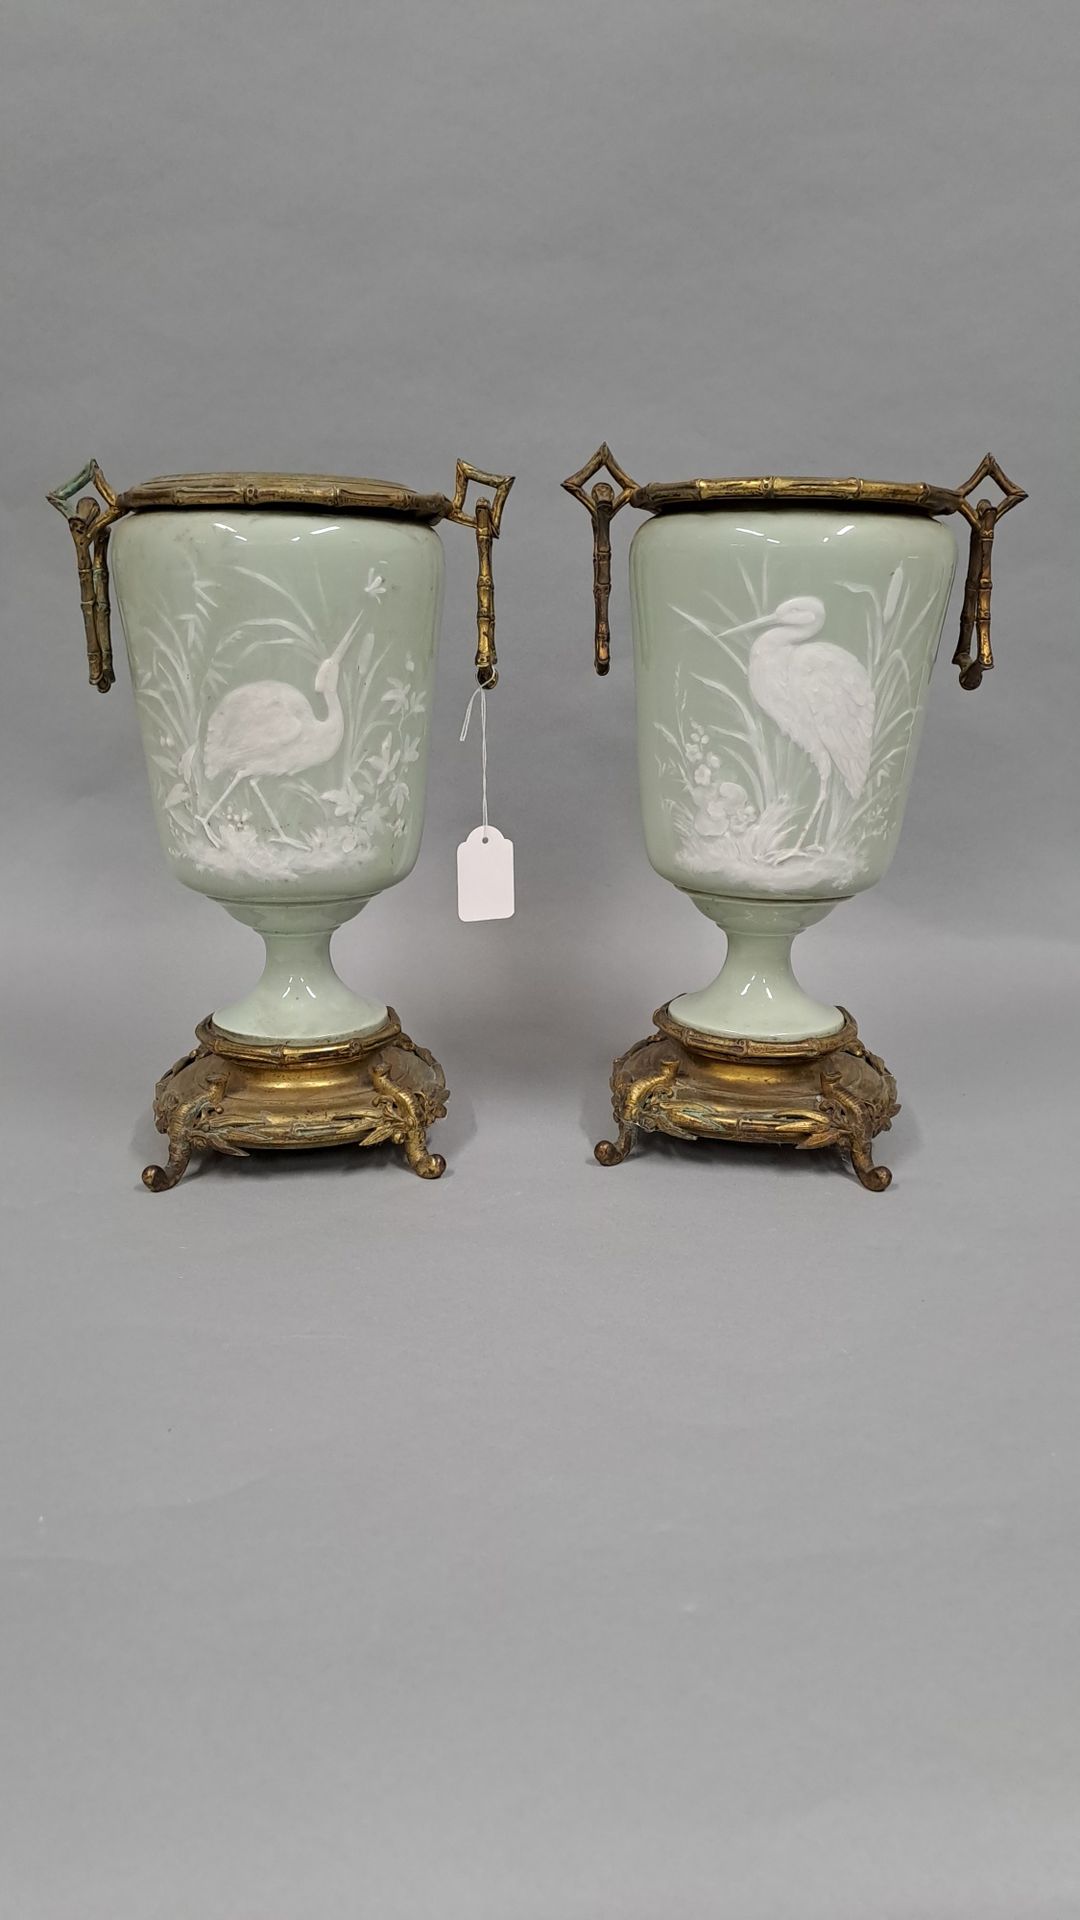 Null 一对青瓷花瓶，白色浮雕的涉水者，铜质底座和竹子装饰的支架。19世纪晚期。



高度：31厘米。